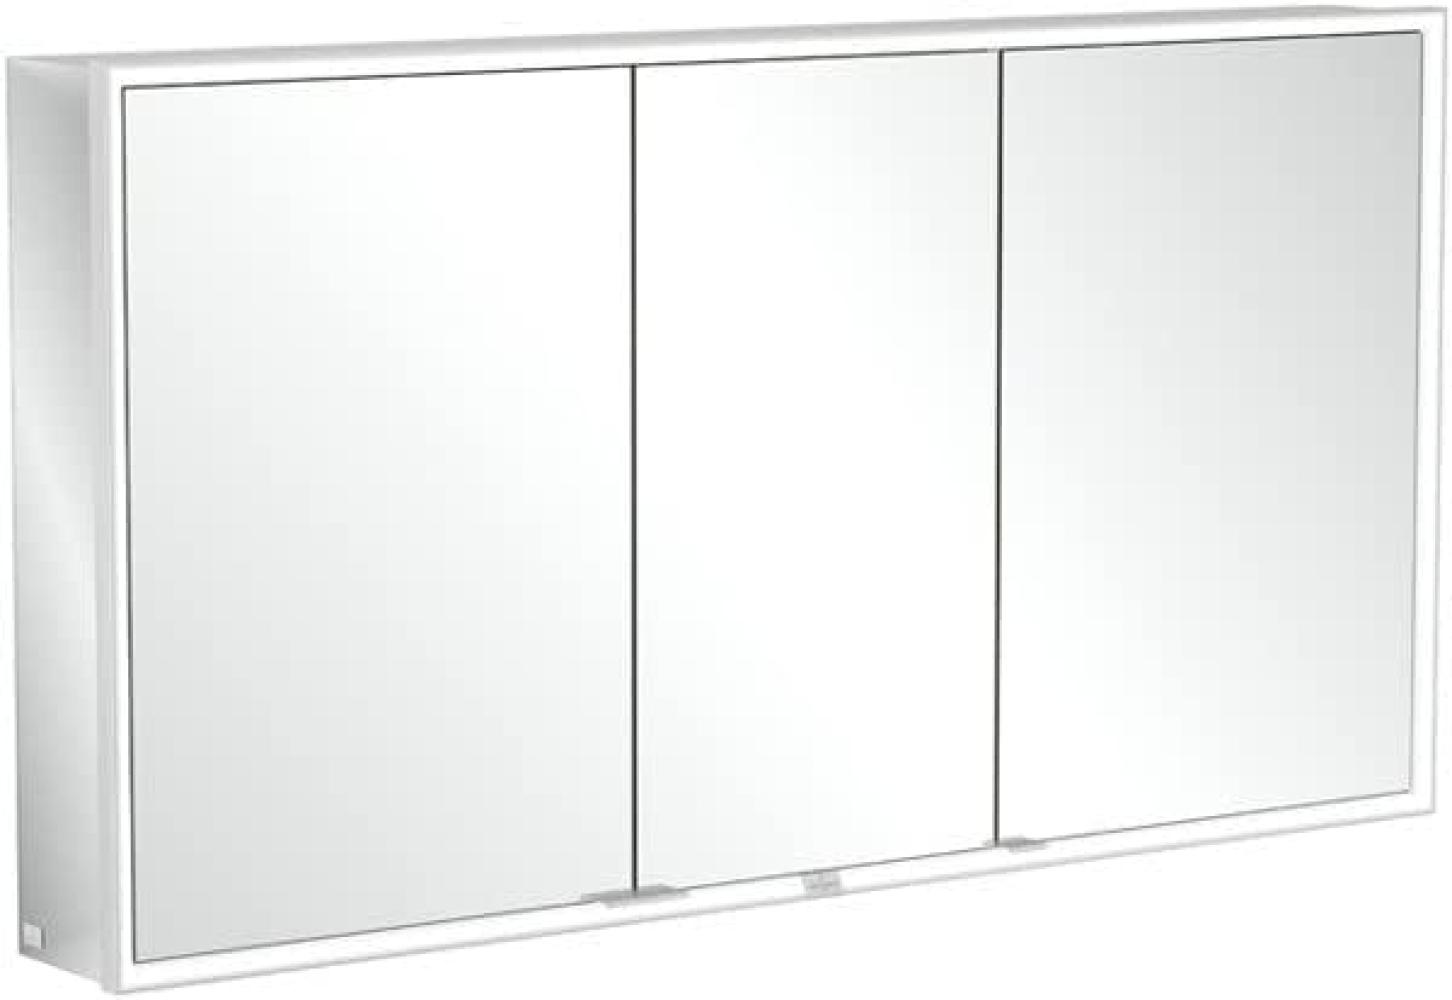 Villeroy & Boch My View Now, Spiegelschrank für Aufputz mit Beleuchtung, 1400x750x168 mm, mit Ein-/Ausschalter, Smart Home fähig, 3 Türen, A45714 - A4571400 Bild 1